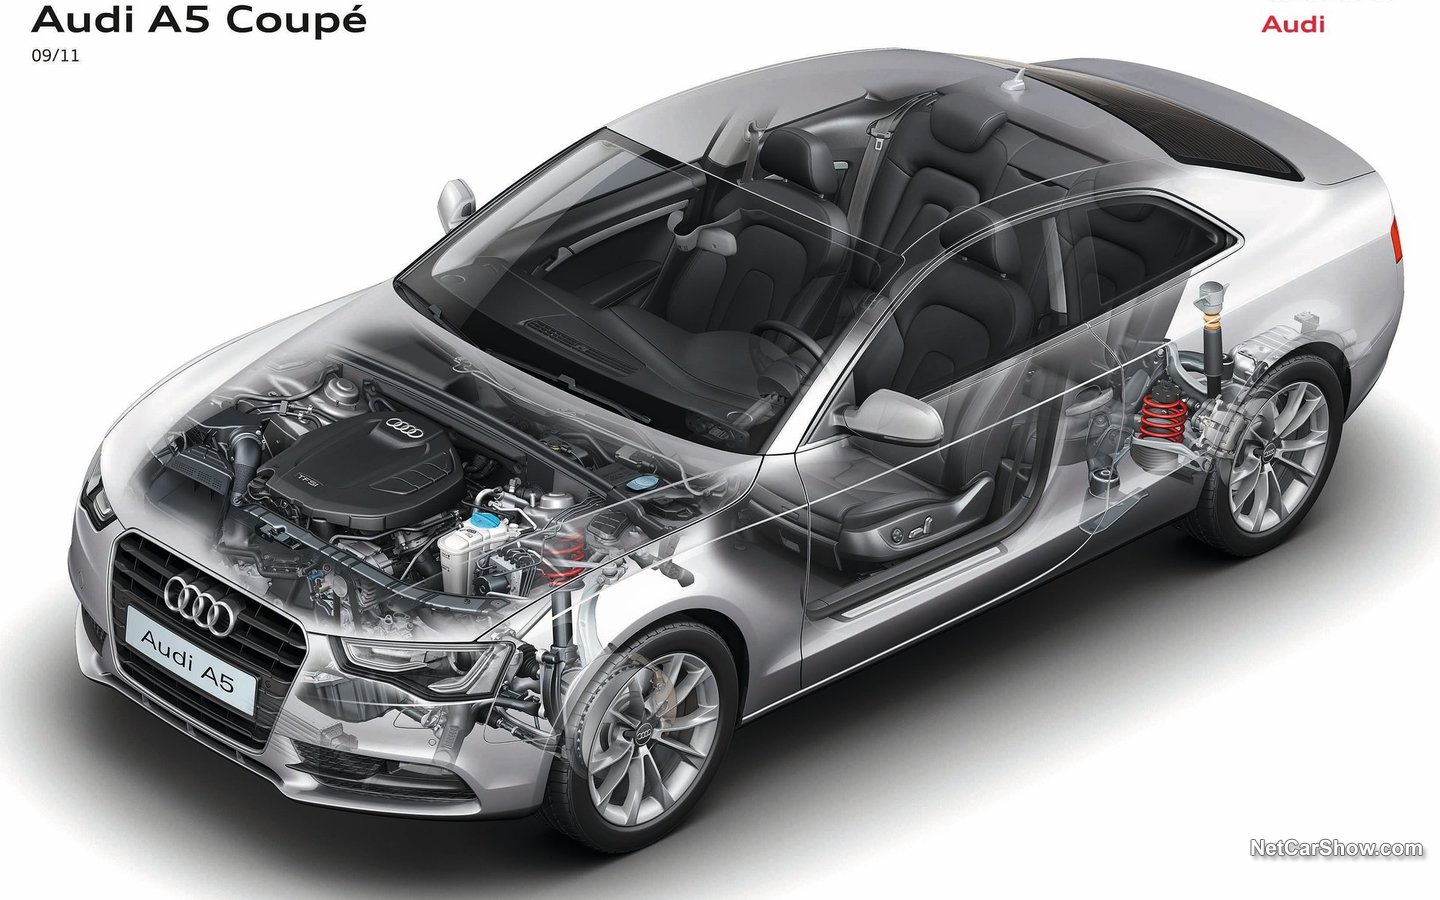 Audi A5 Coupé 2012 cc6d817f